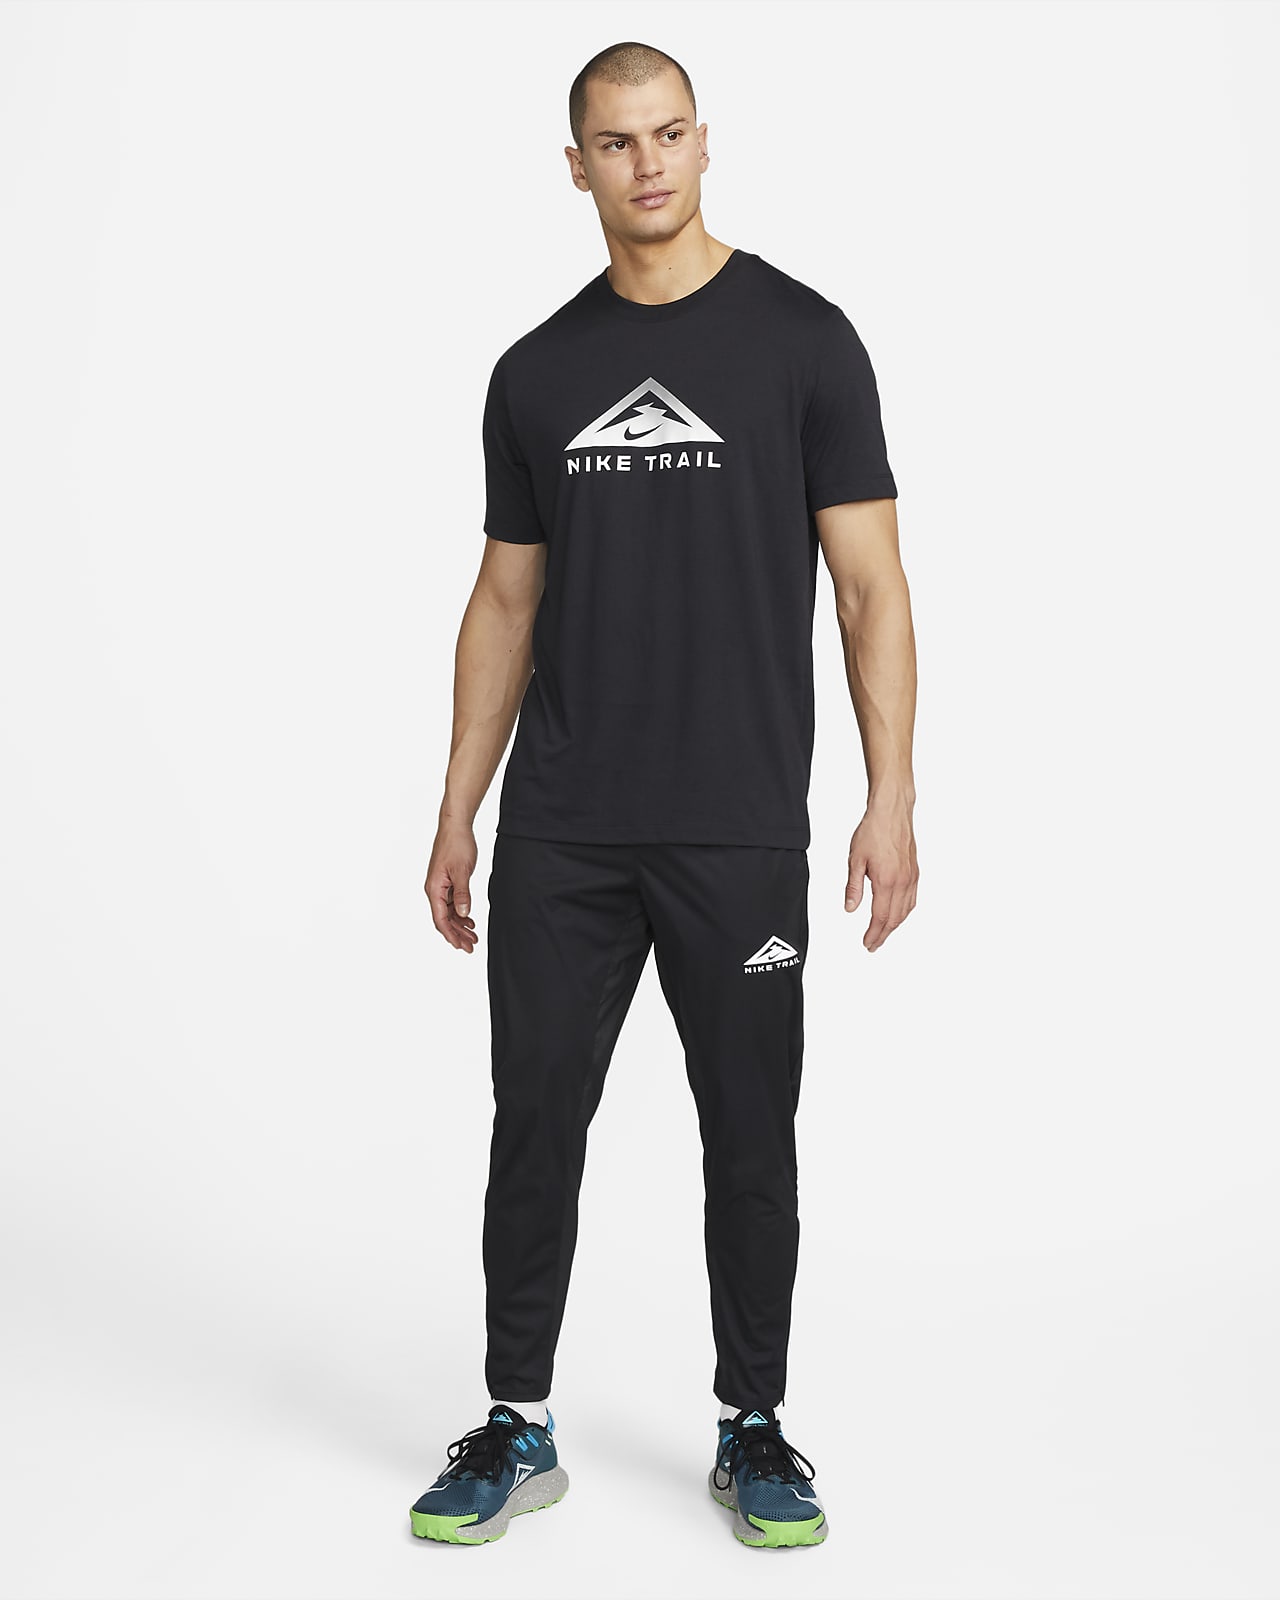 Nike Dri-FIT Phenom Elite Men's Running Pants - Smoke Grey